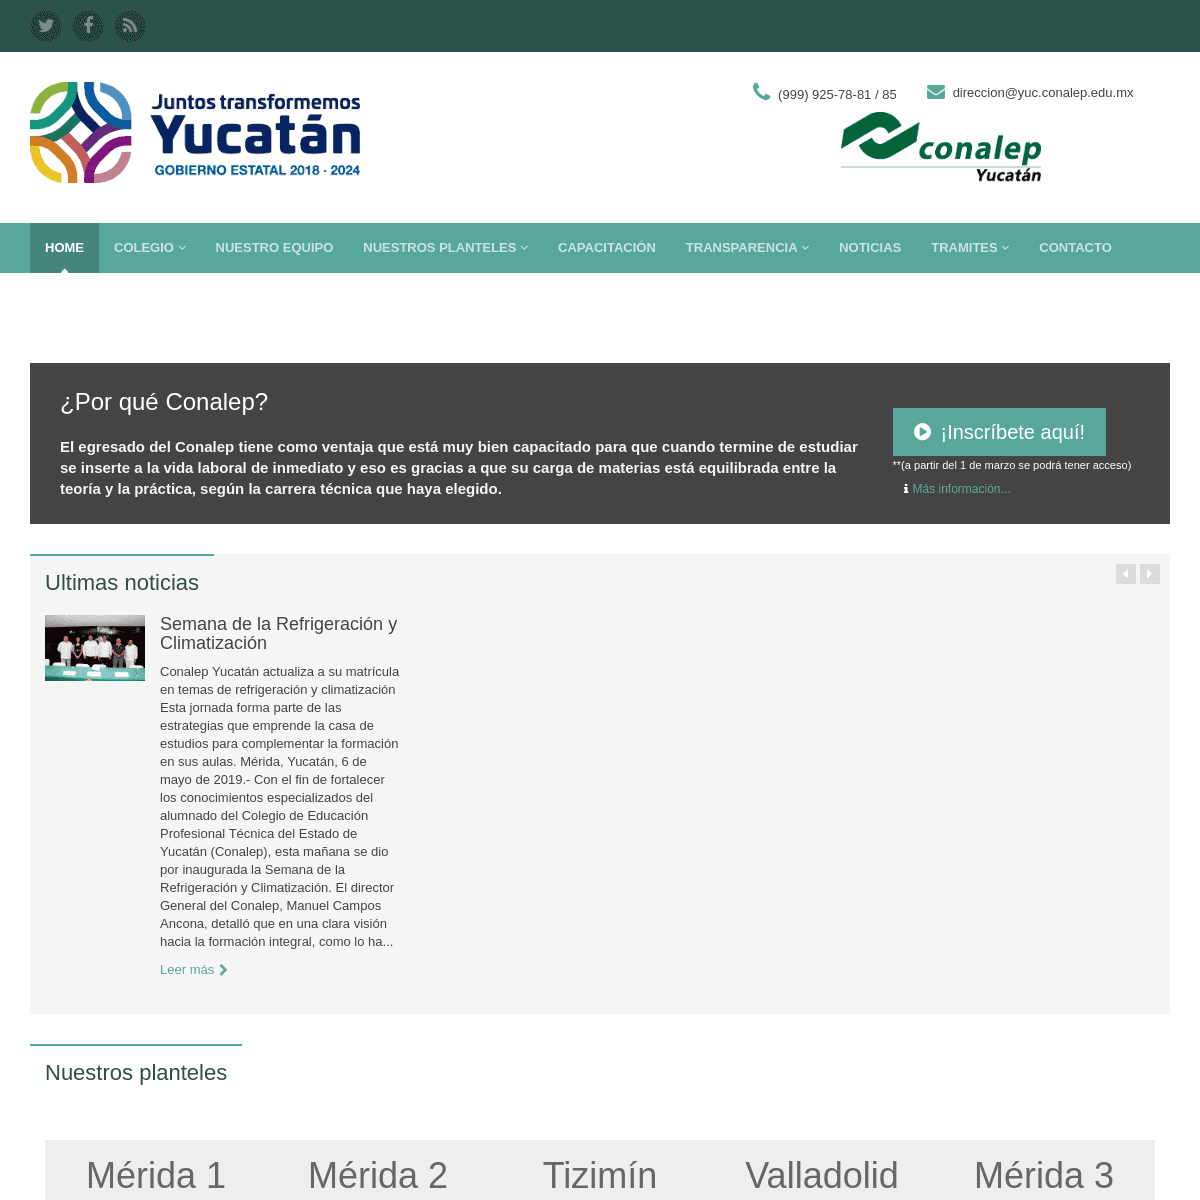 Colegio Nacional de Educación Profesional Técnica :: Gobierno del Estado de Yucatán